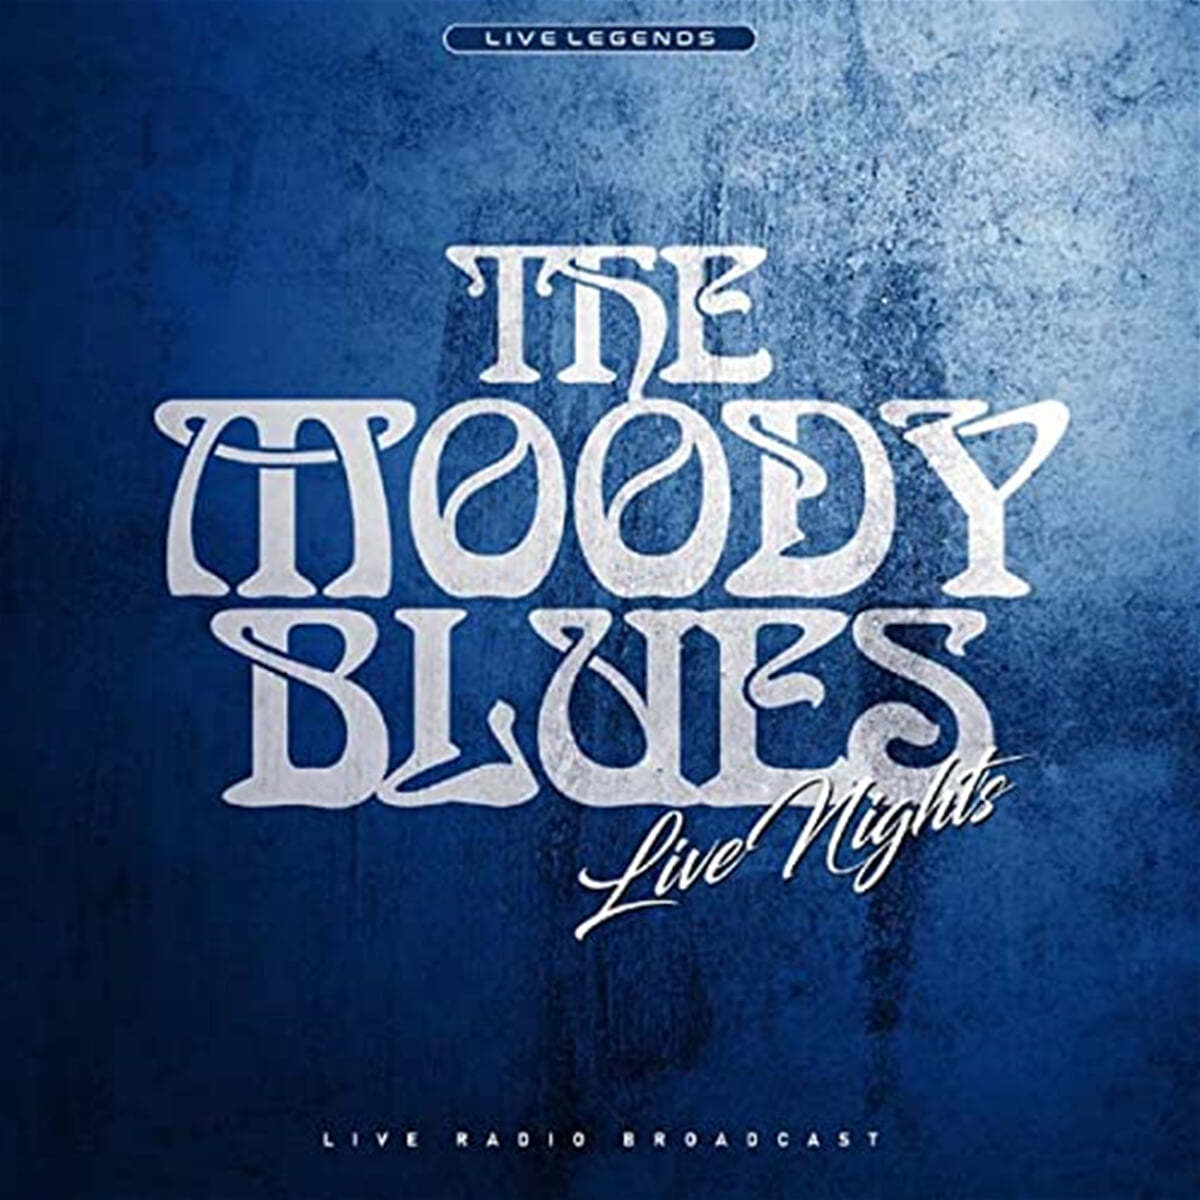 The Moody Blues (무디 블루스) - Live Nights [블루 컬러 LP] 